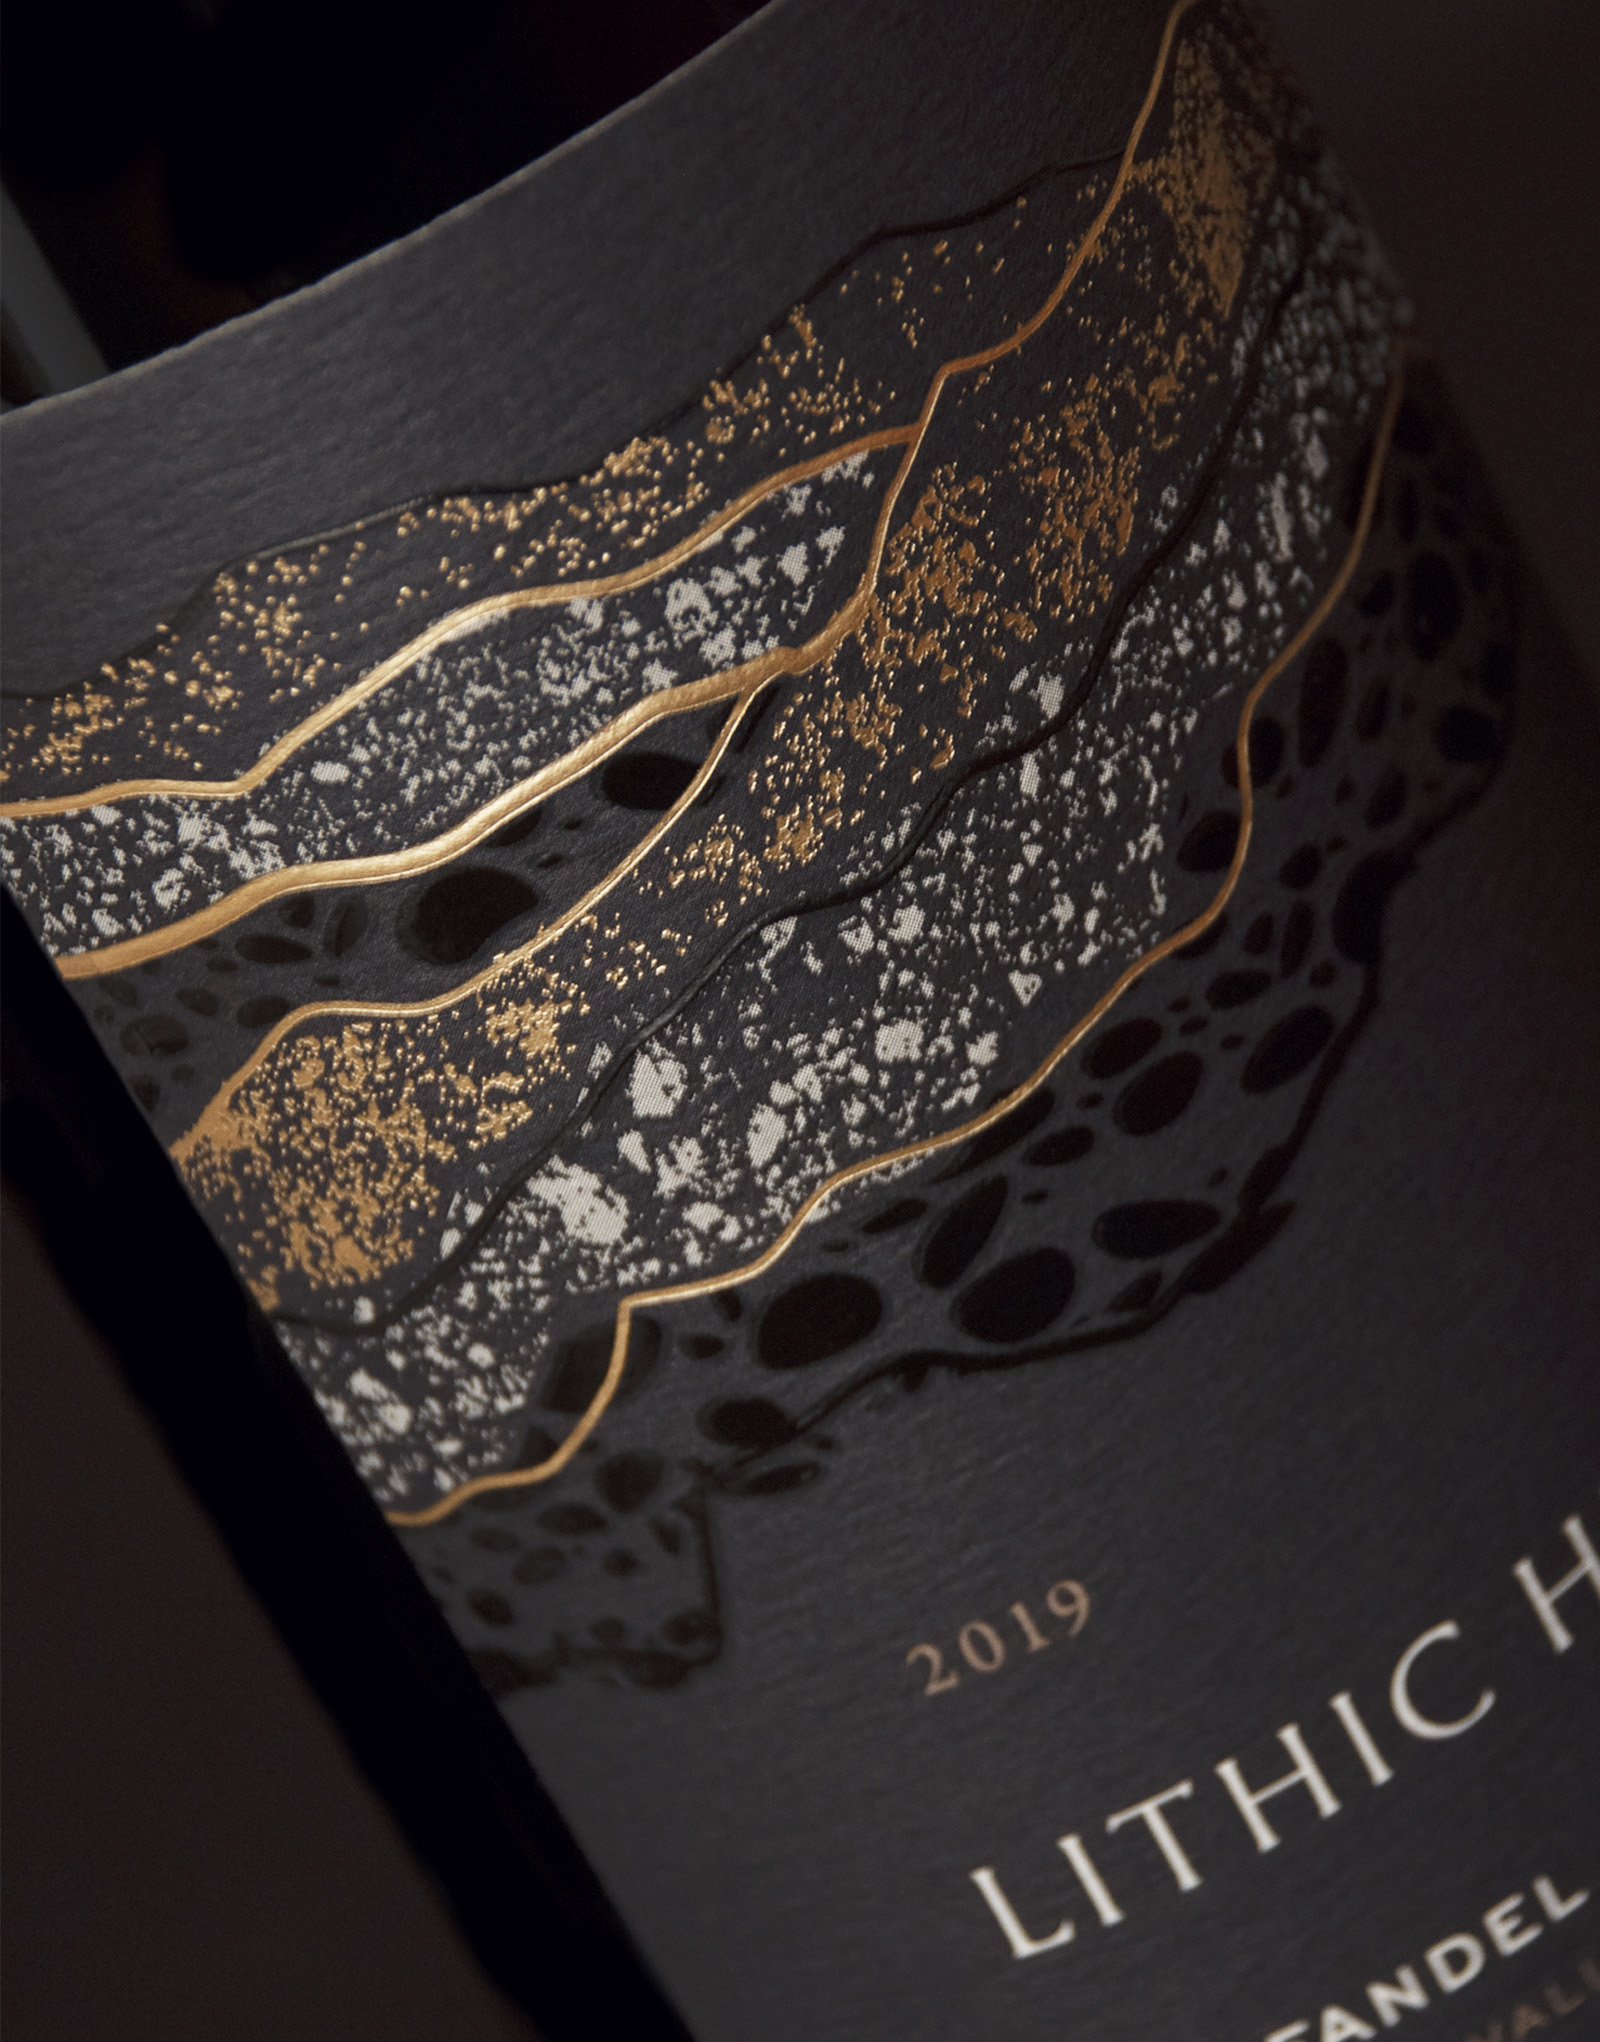 Lithic Hill葡萄酒独特的包装设计(图2)